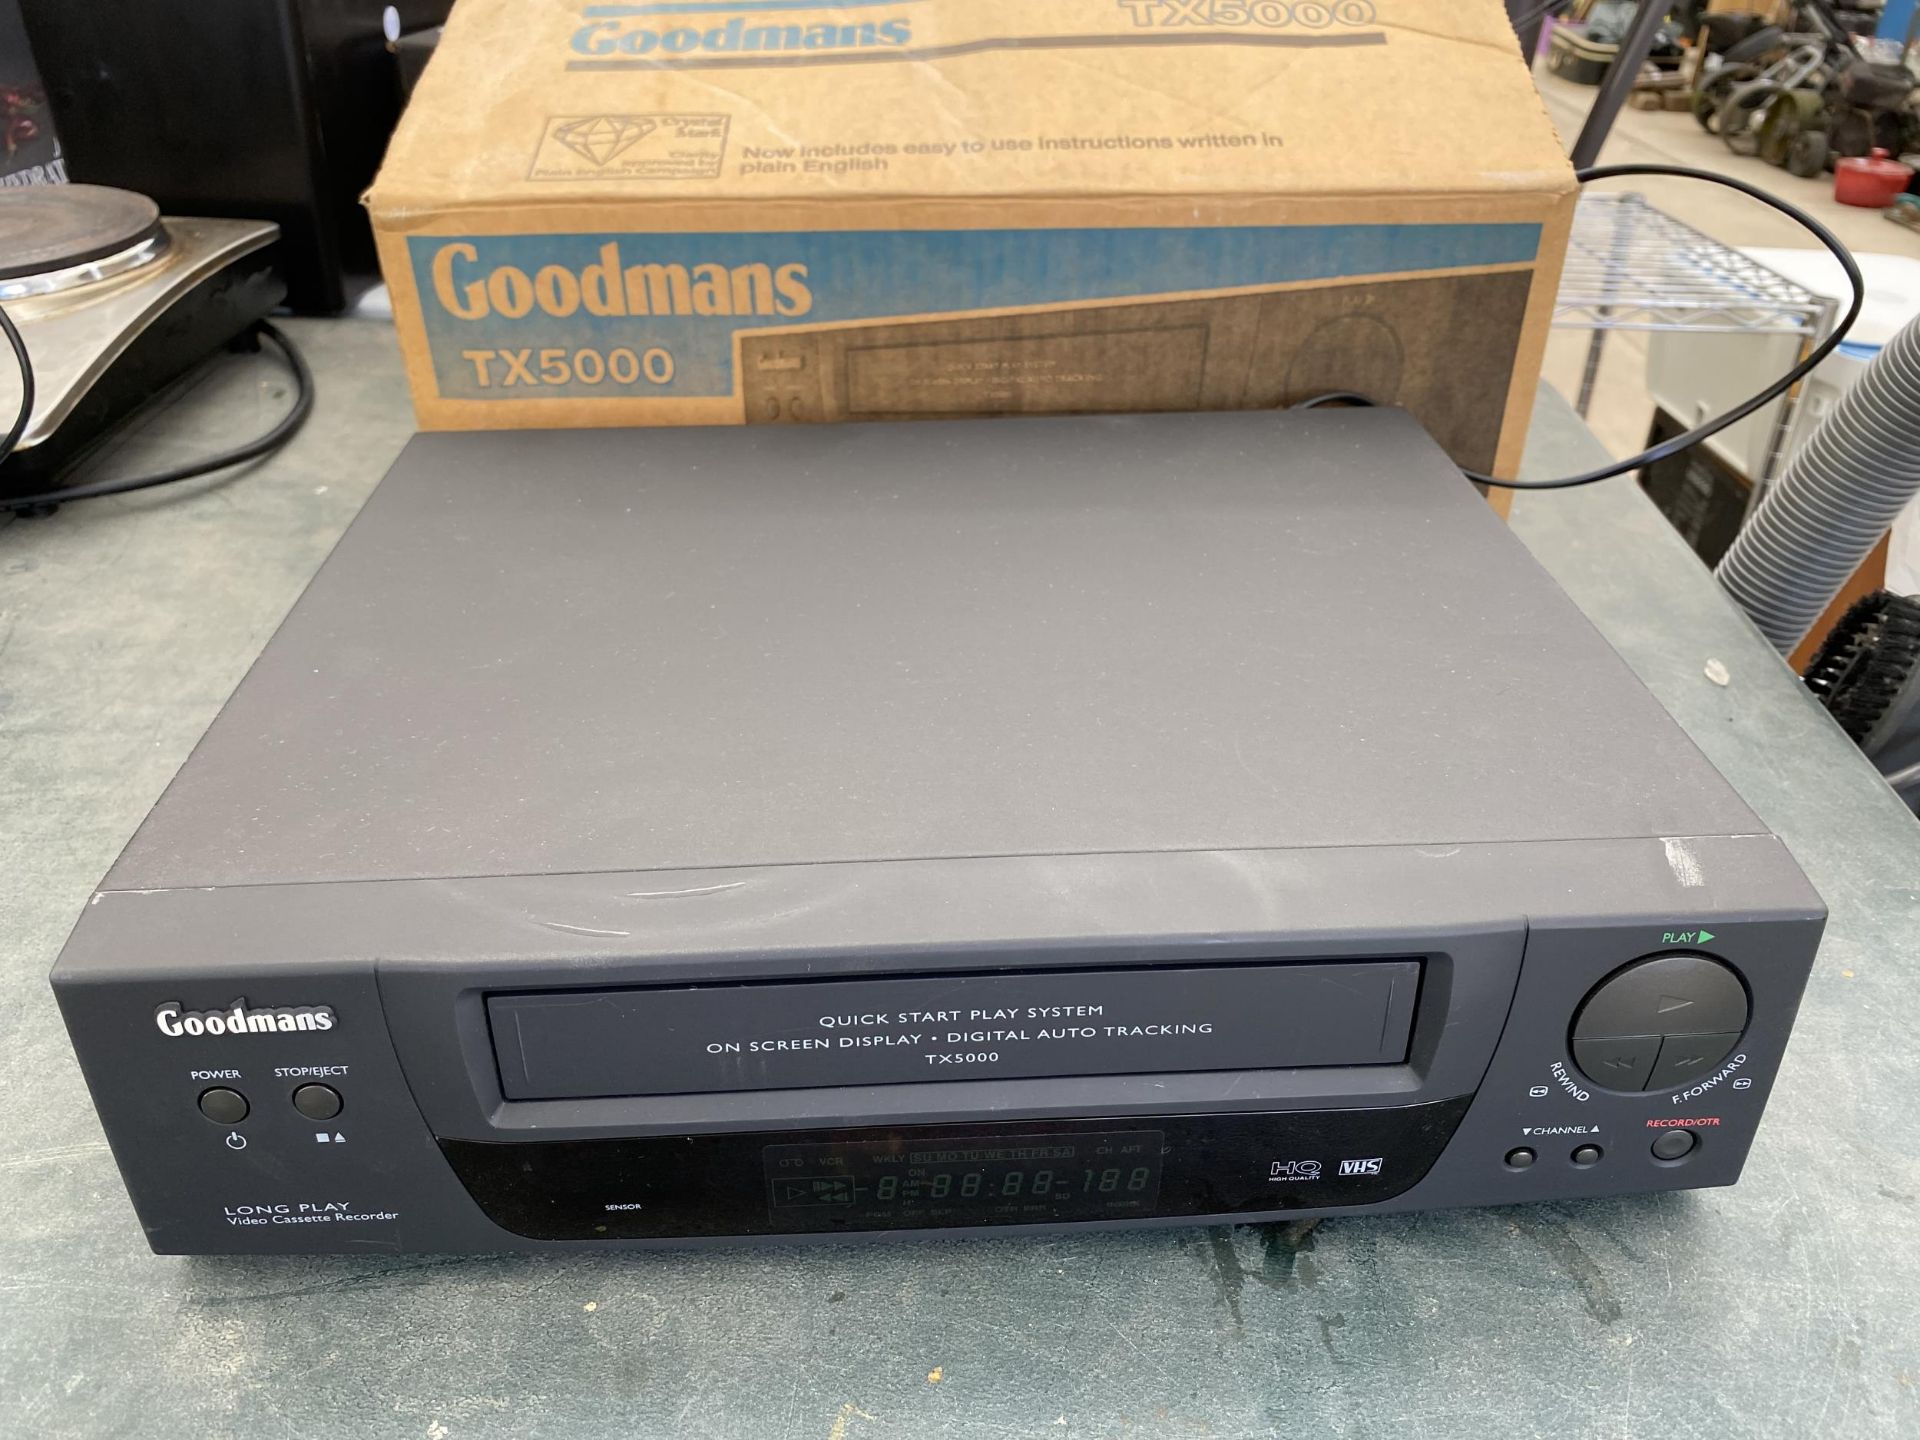 A GOODMANS TX5000 VHS PLAYER